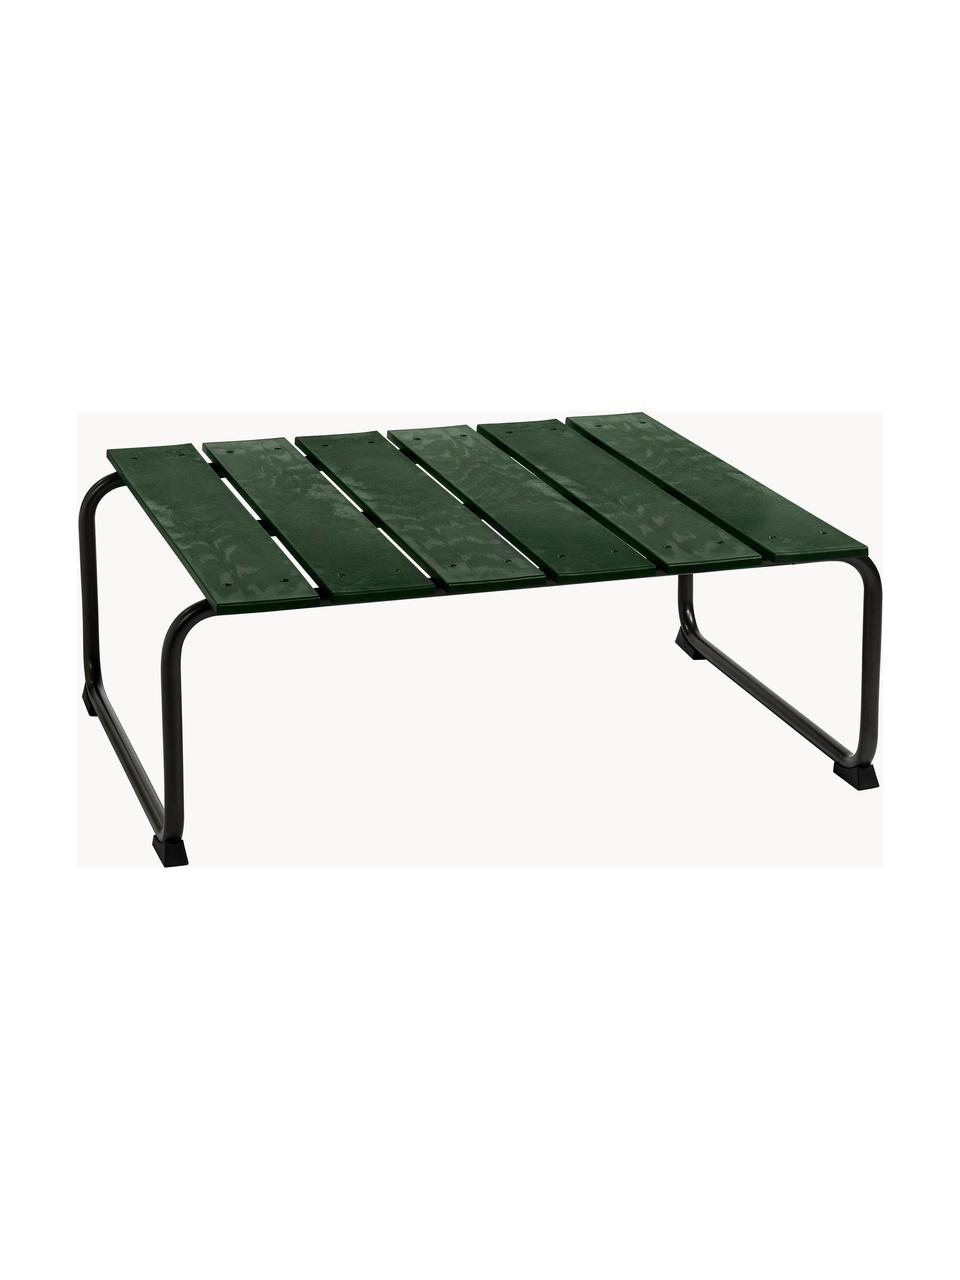 Tavolino da giardino fatto a mano Ocean, Struttura: acciaio riciclato, rivest, Verde scuro, nero, Larg. 79 x Prof. 70 cm